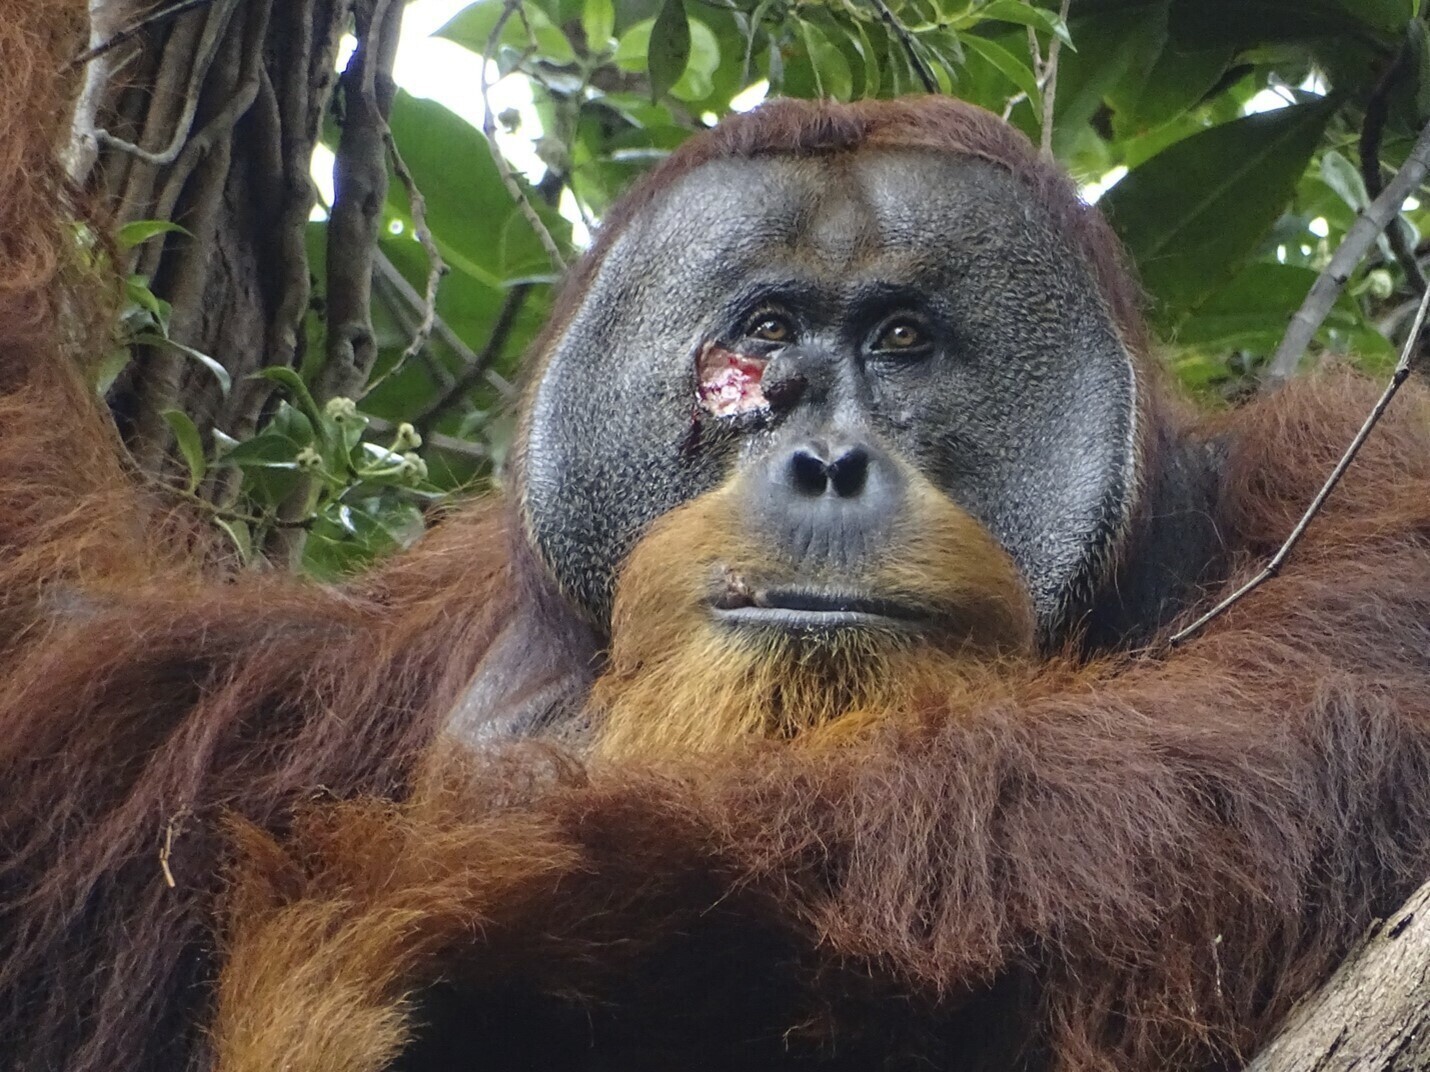 gewonde orang-oetan gebruikt zelfgemaakt medicijn om wond te laten genezen